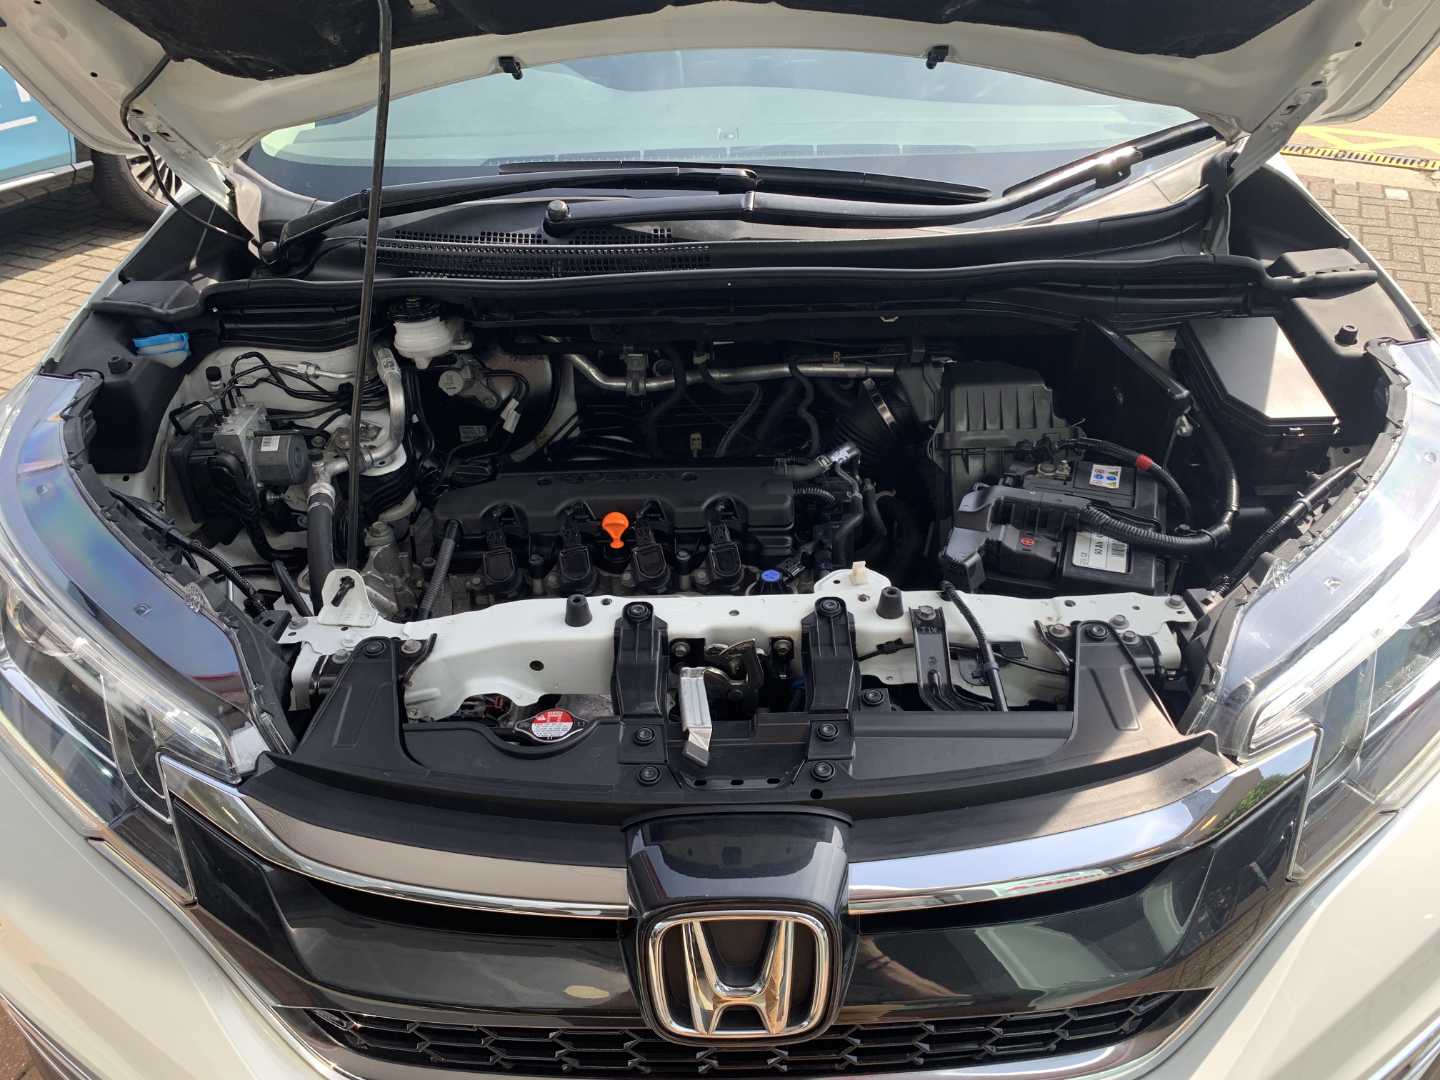 Honda CR-V 2.0 i-VTEC EX 5dr Auto - Image 20